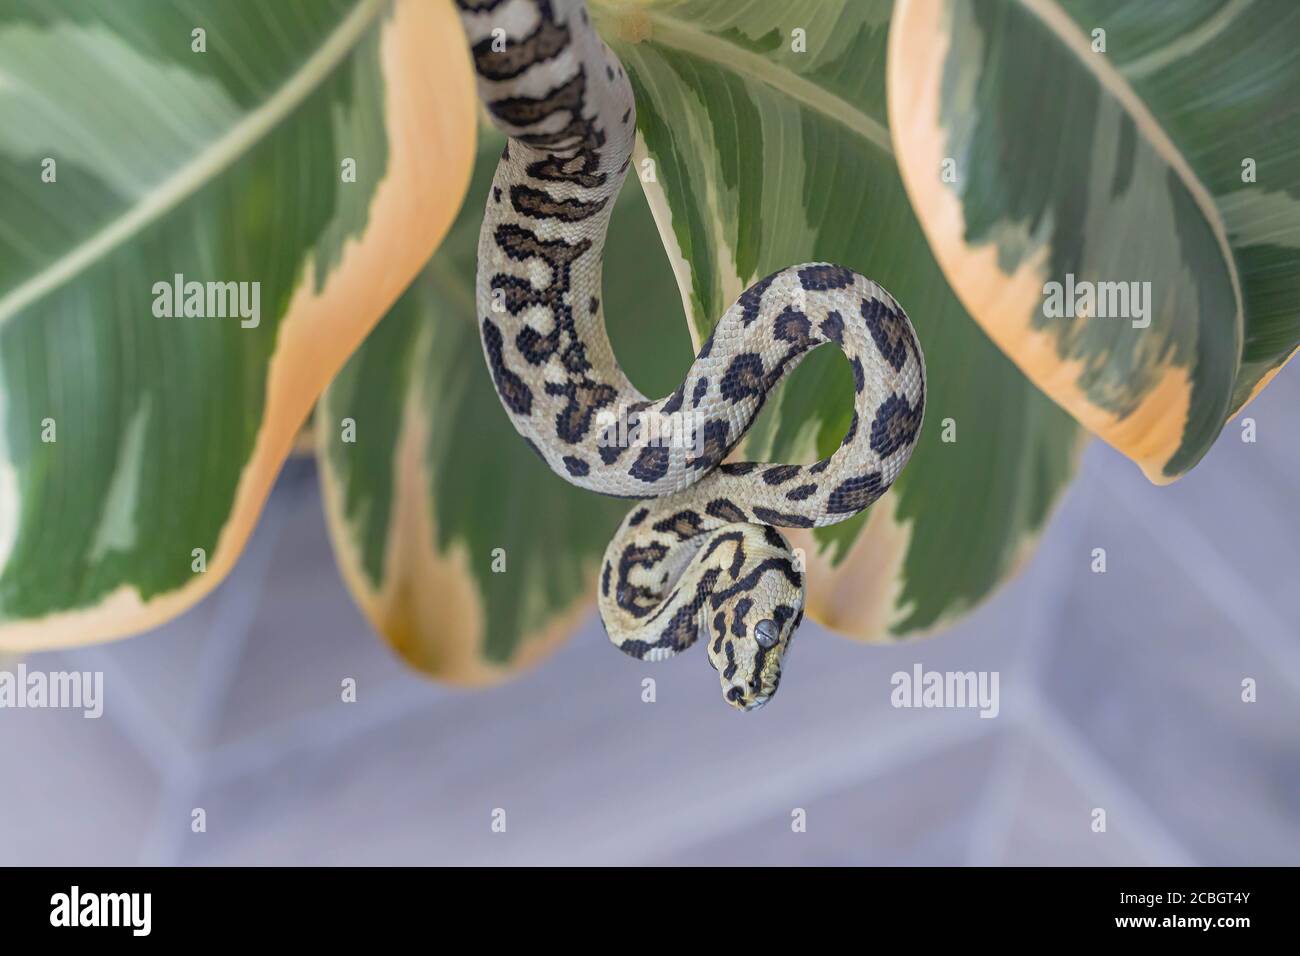 Morelia spilota. Serpent courbé et accroché sur les feuilles de caoutchouc fig. Animal exotique. Gros plan, macro. Papier peint, affiche, fond d'écran Banque D'Images